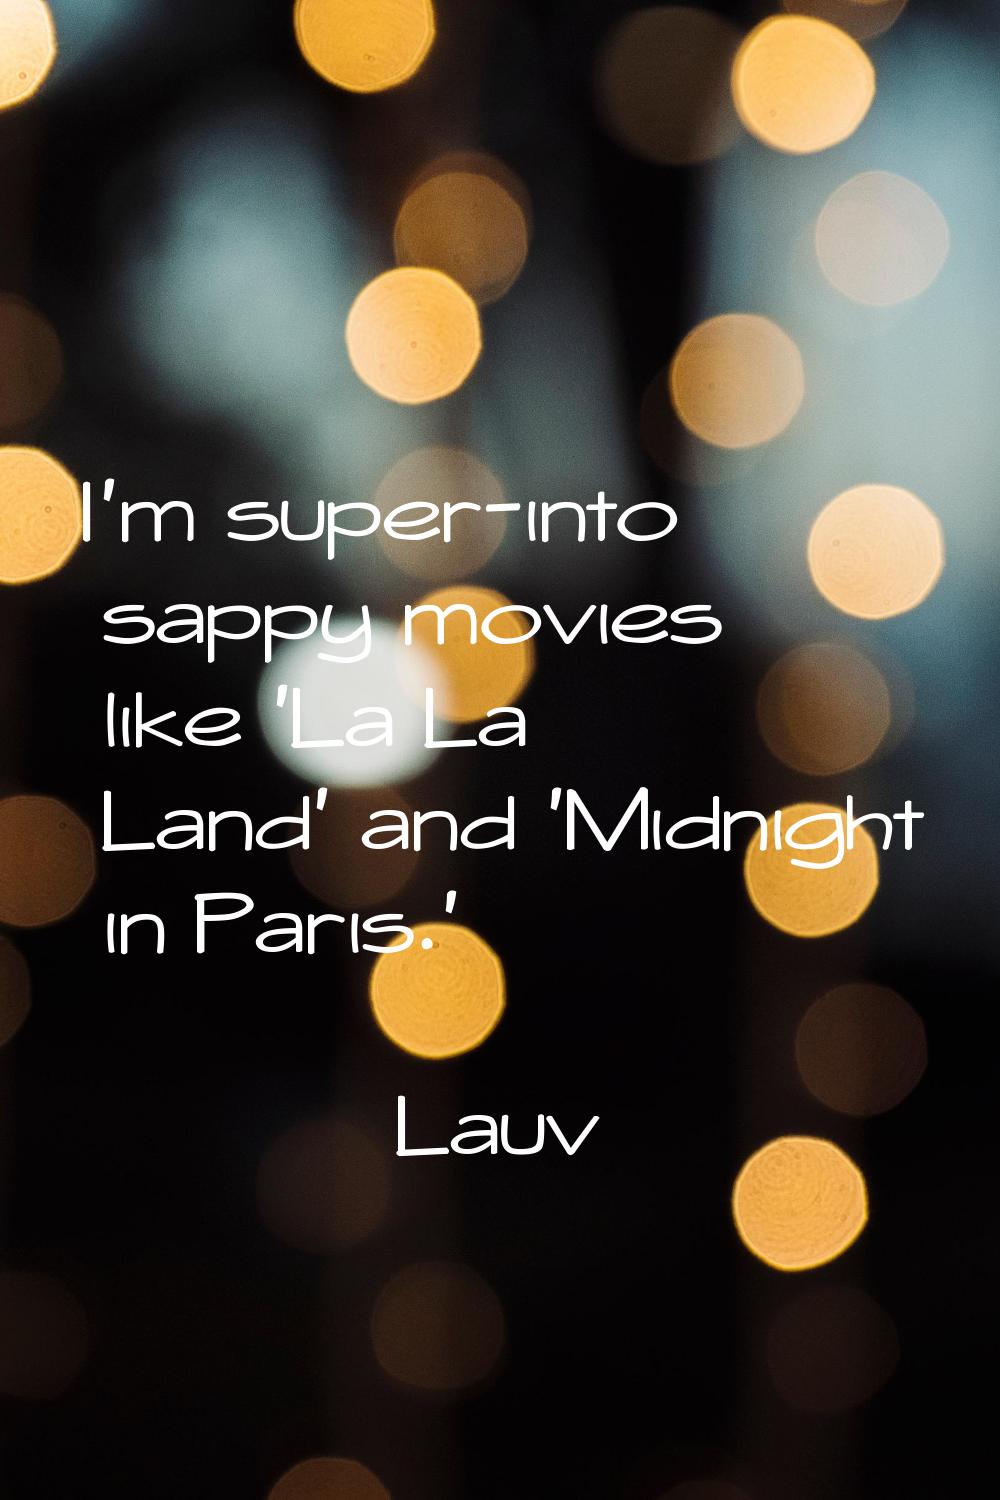 I'm super-into sappy movies like 'La La Land' and 'Midnight in Paris.'